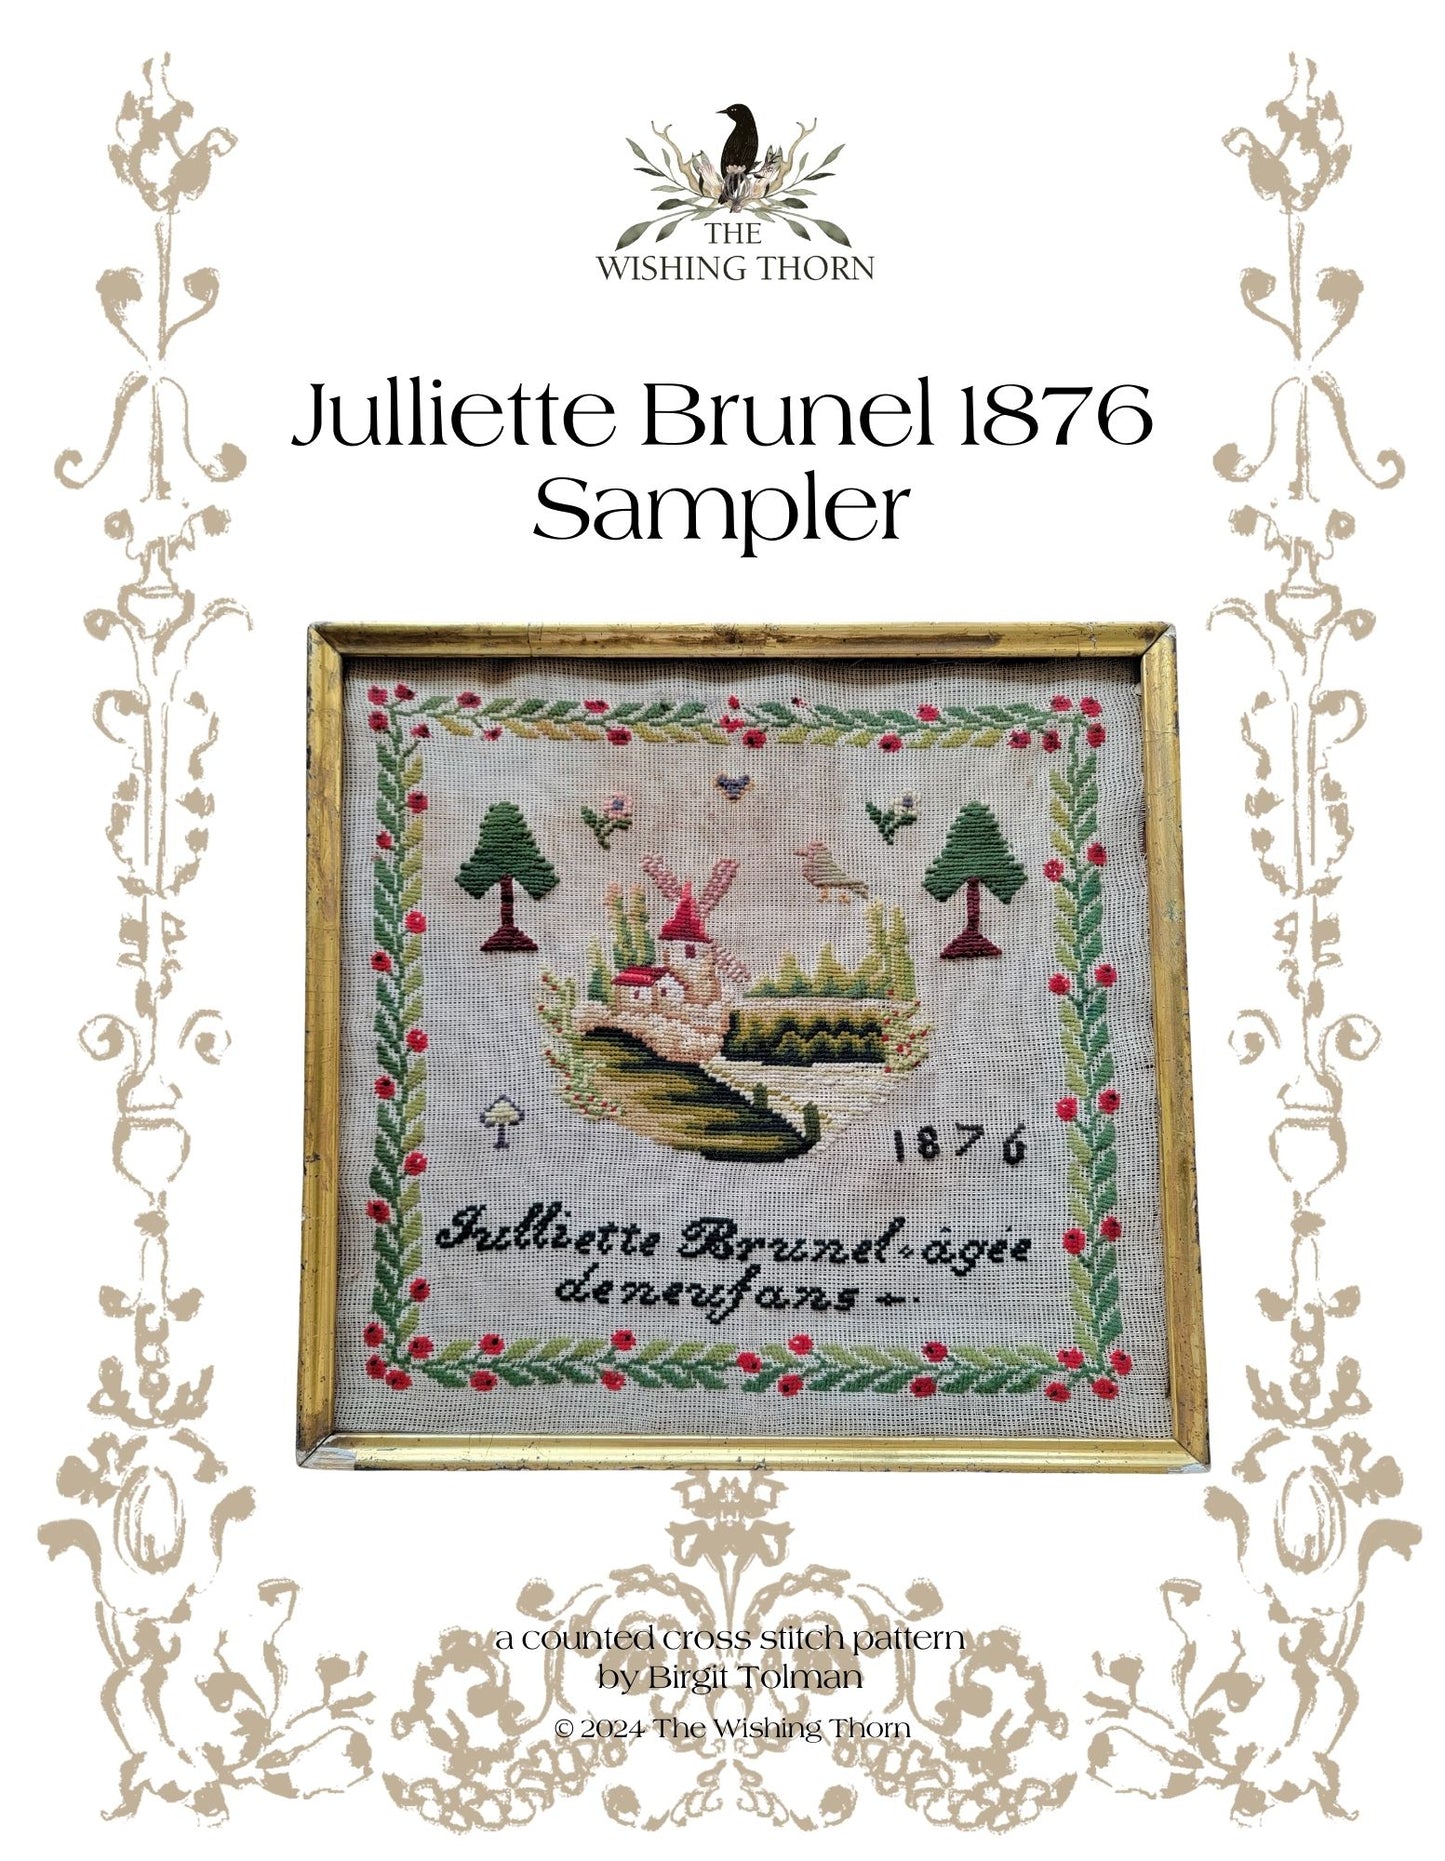 Julliette Brunel 1876 Sampler